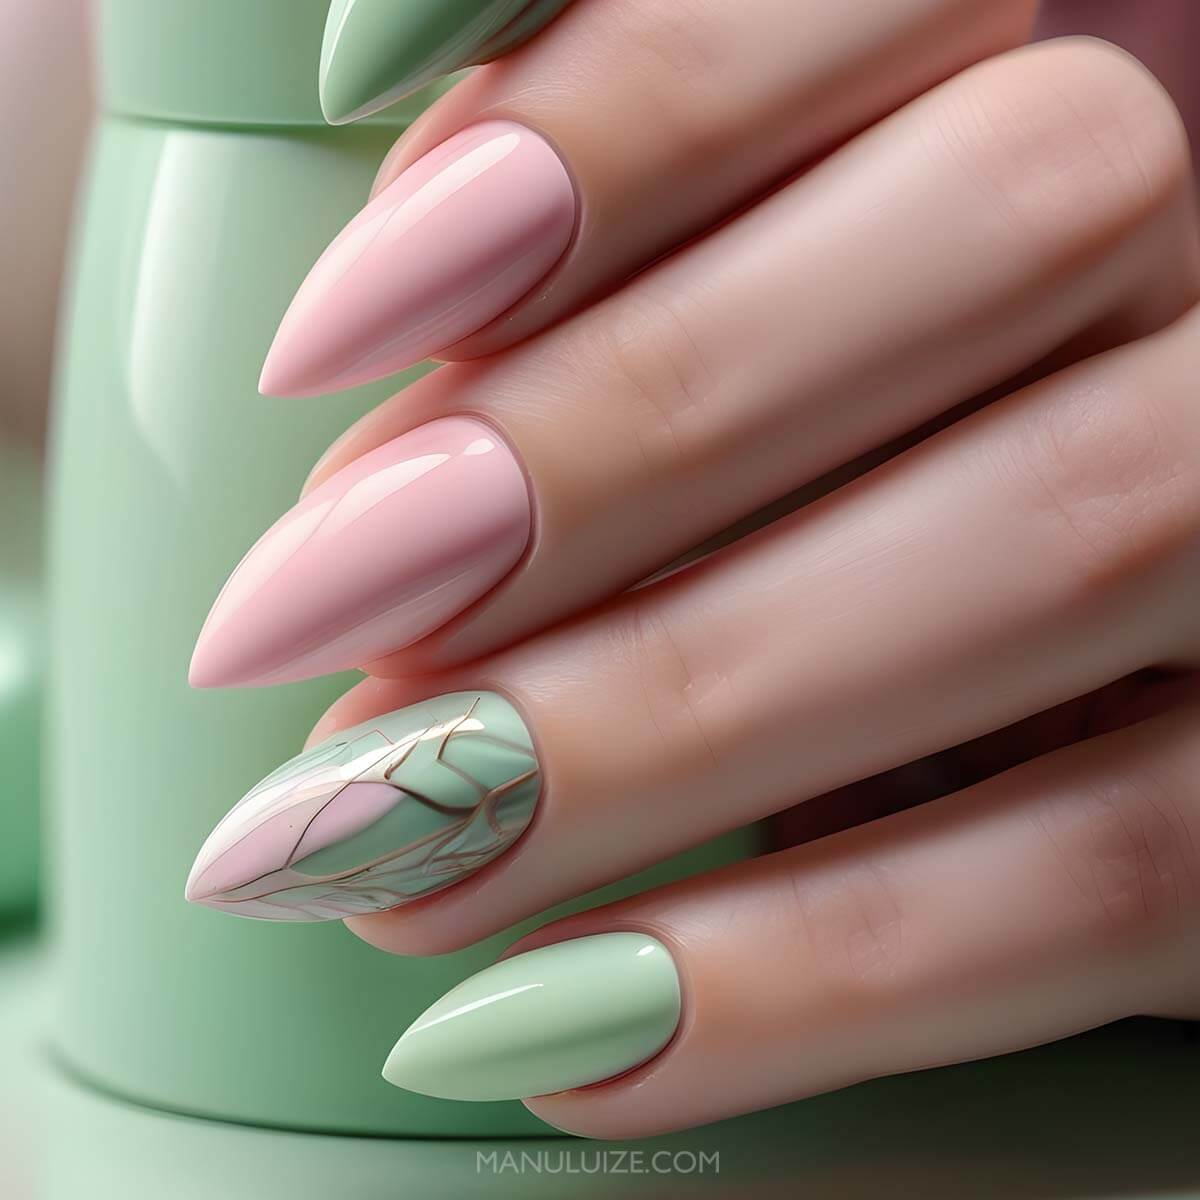 Pastel green and pink nail art